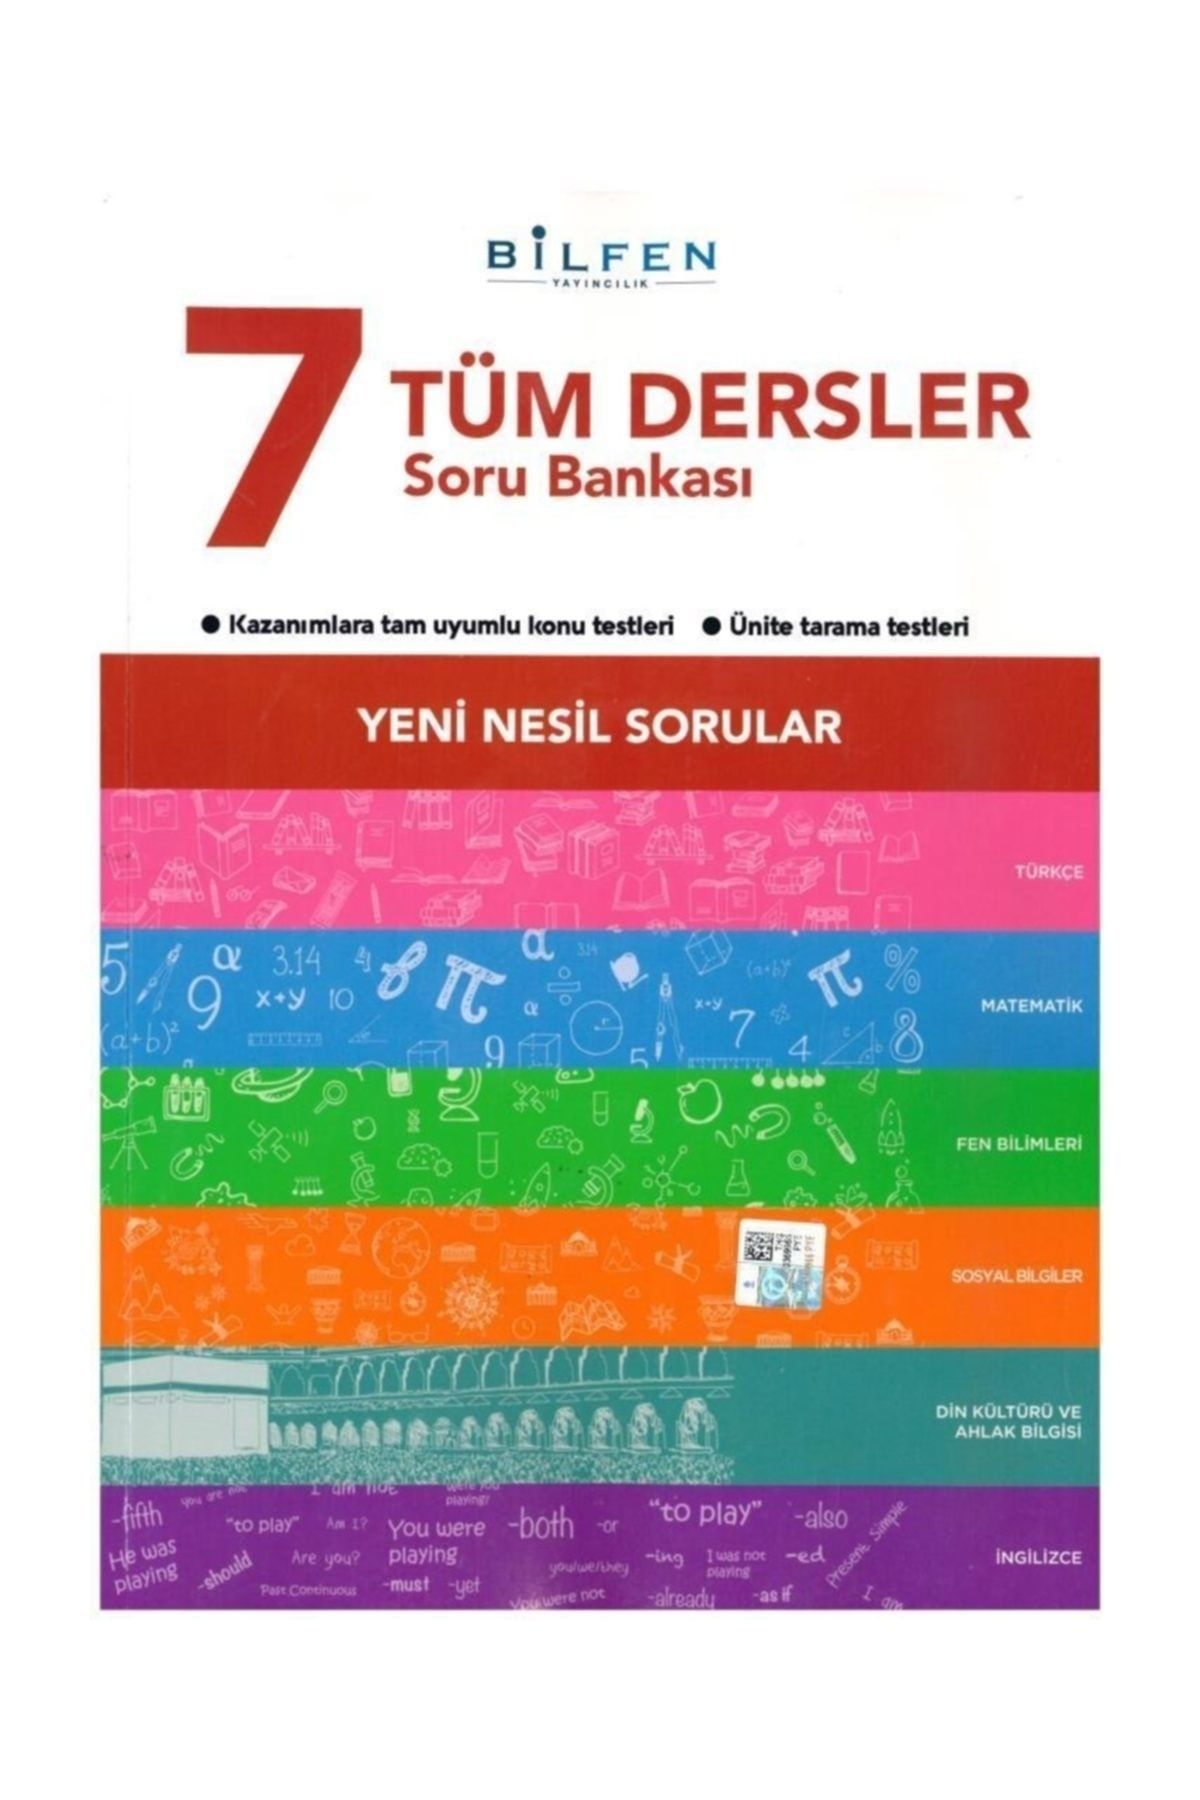 Bilfen Yayınları 7. Sınıf Tüm Dersler Soru Bankası